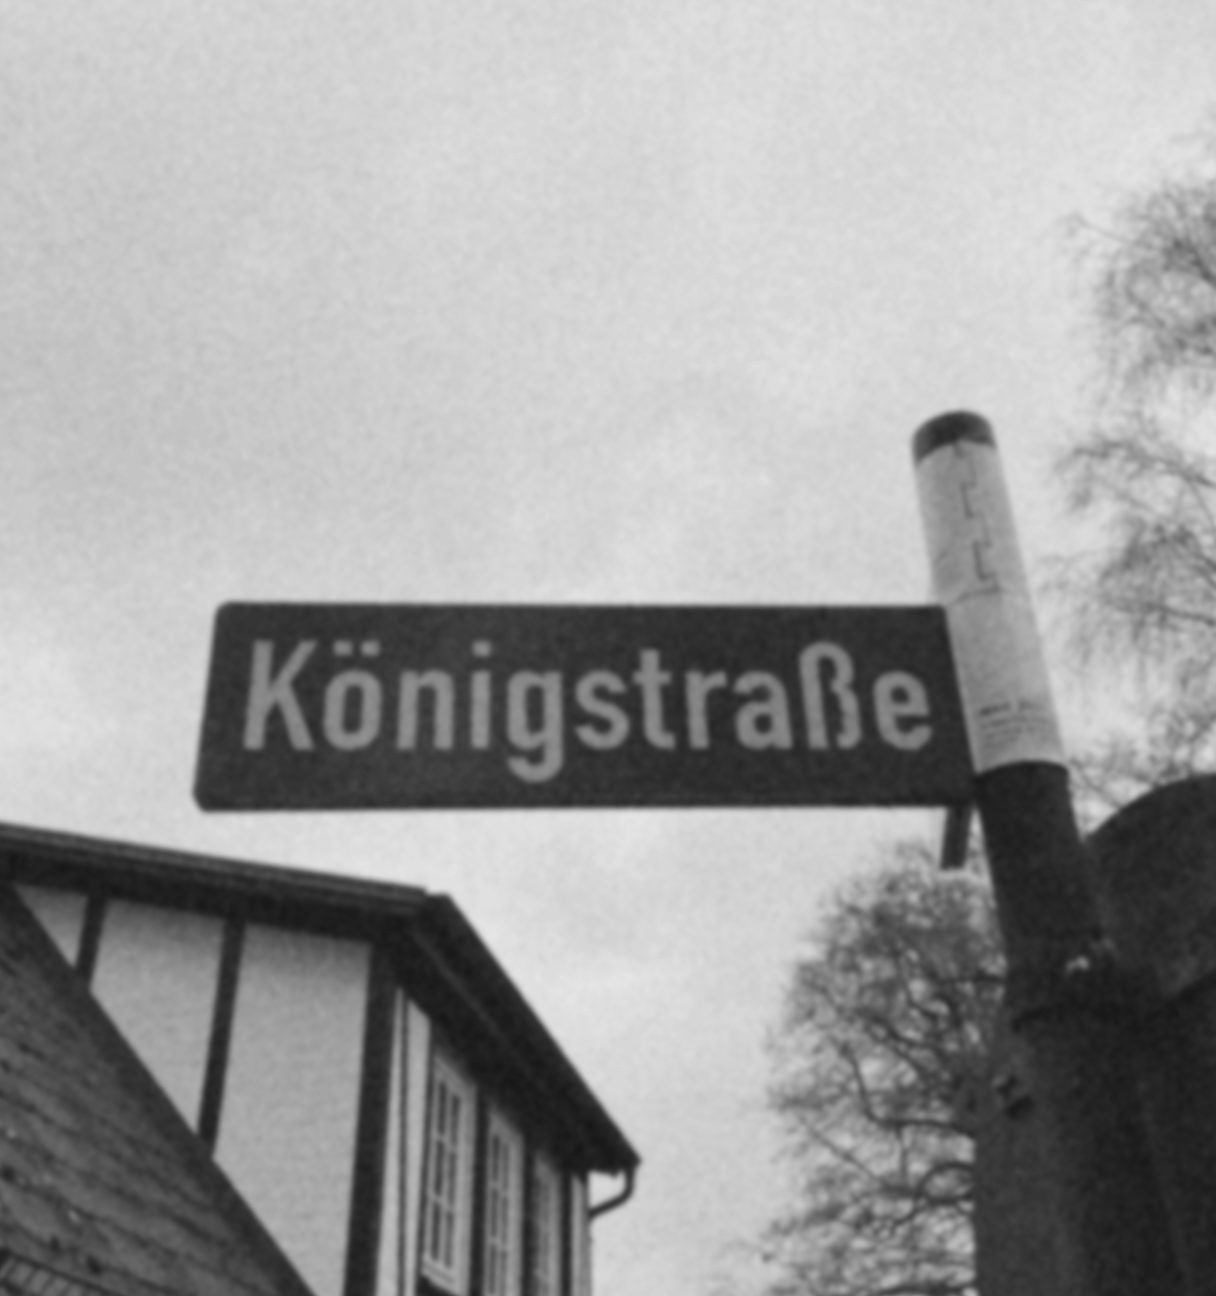 Königstraße Straßenschild